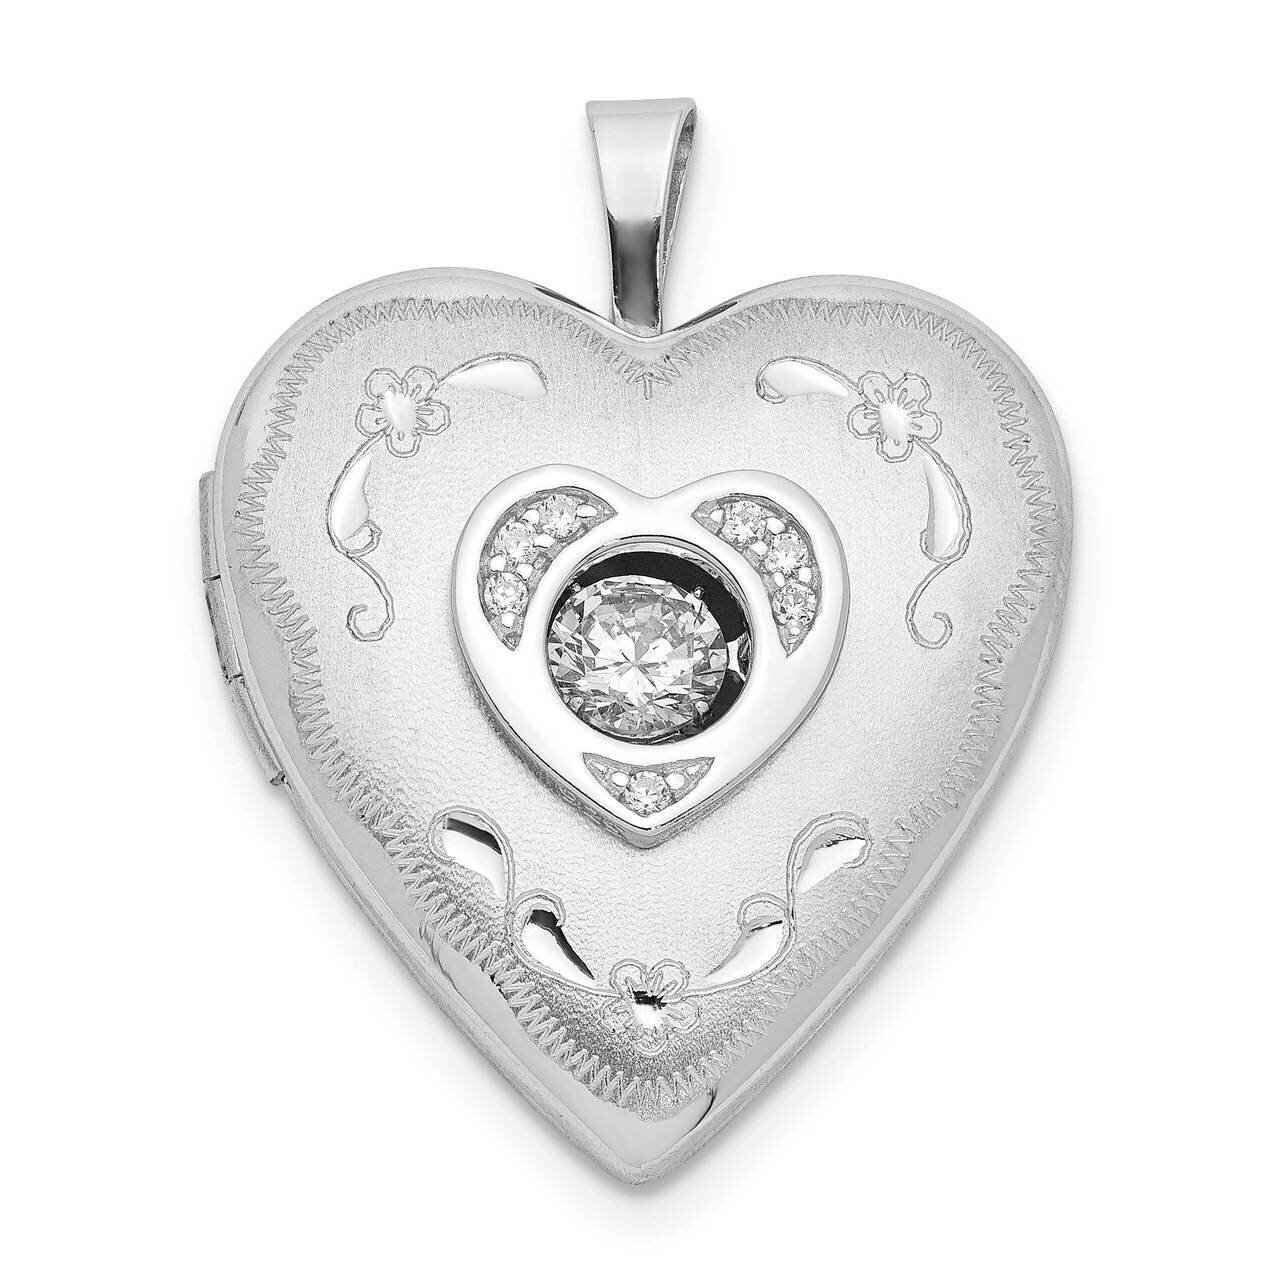 20mm Vibrant Swarovski Crystal Brushed & Polished Heart Locket Sterling Silver QLS890